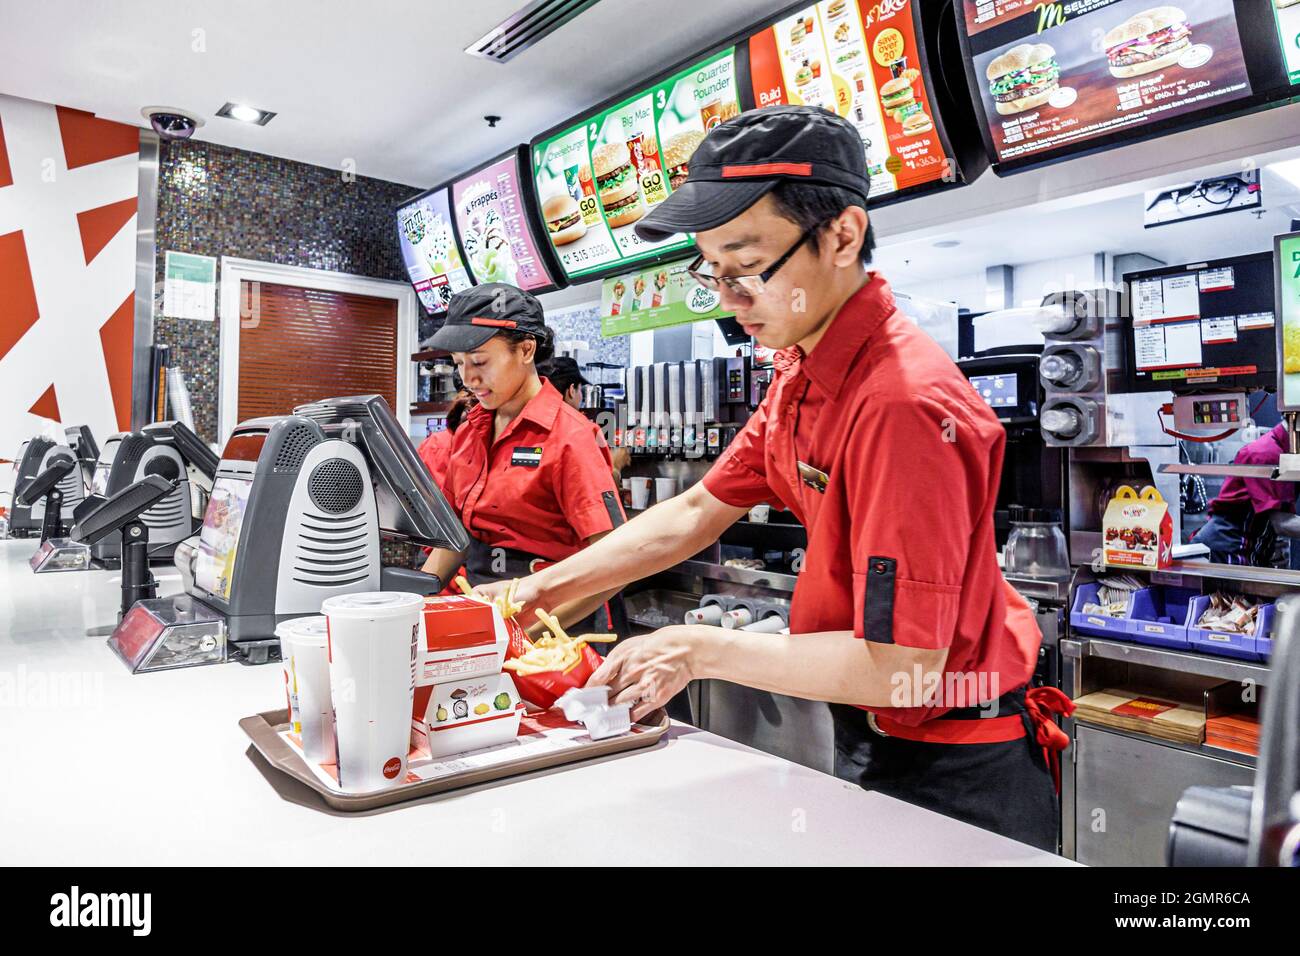 Sydney Australie, Circular Quay, McDonald's restaurant fast food counter homme asiatique homme, employés travaillant à la préparation de l'uniforme de commande femme noire Banque D'Images